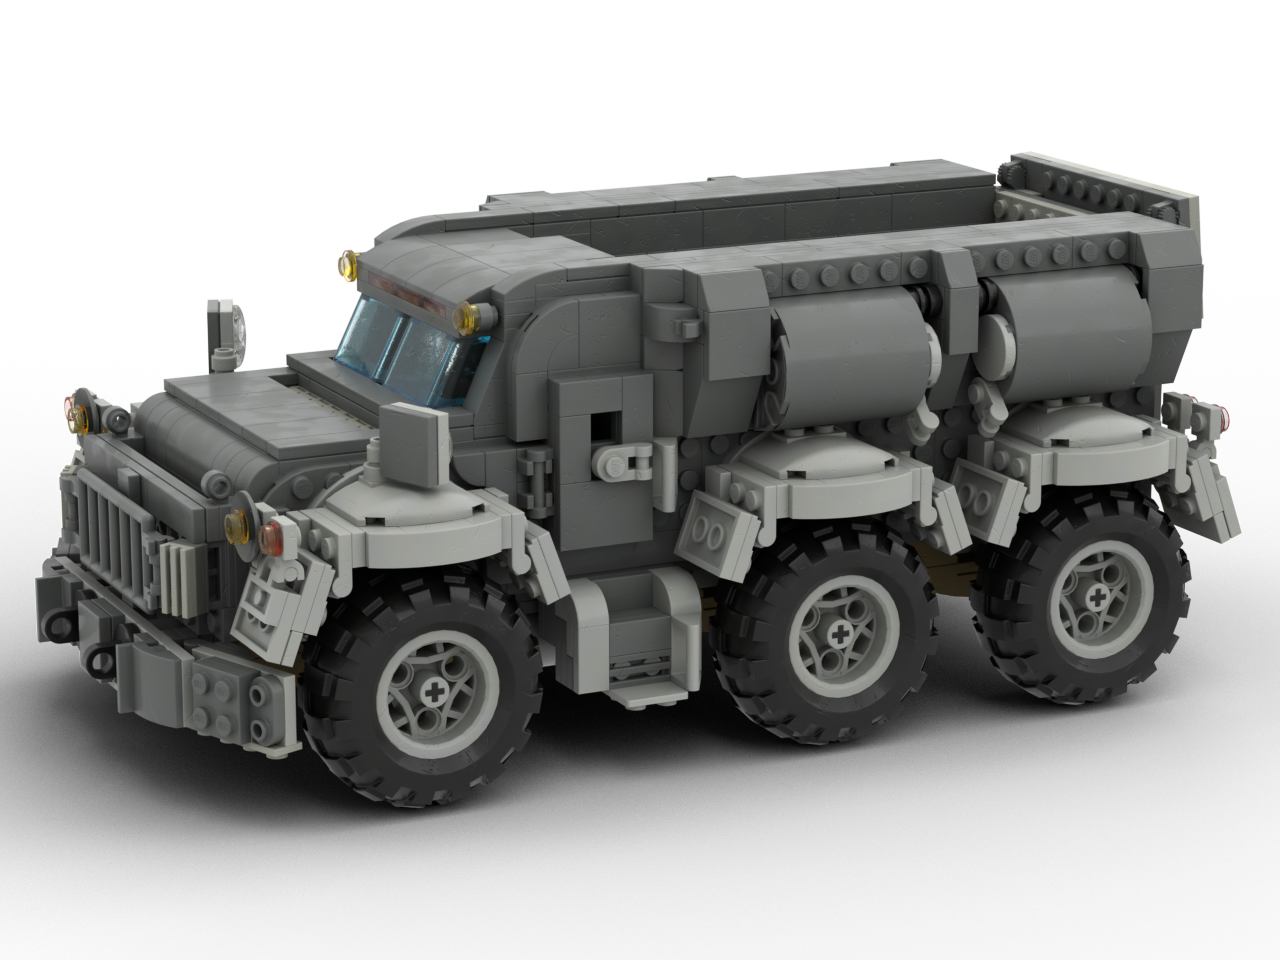 Beefy LEGO three-axle truck